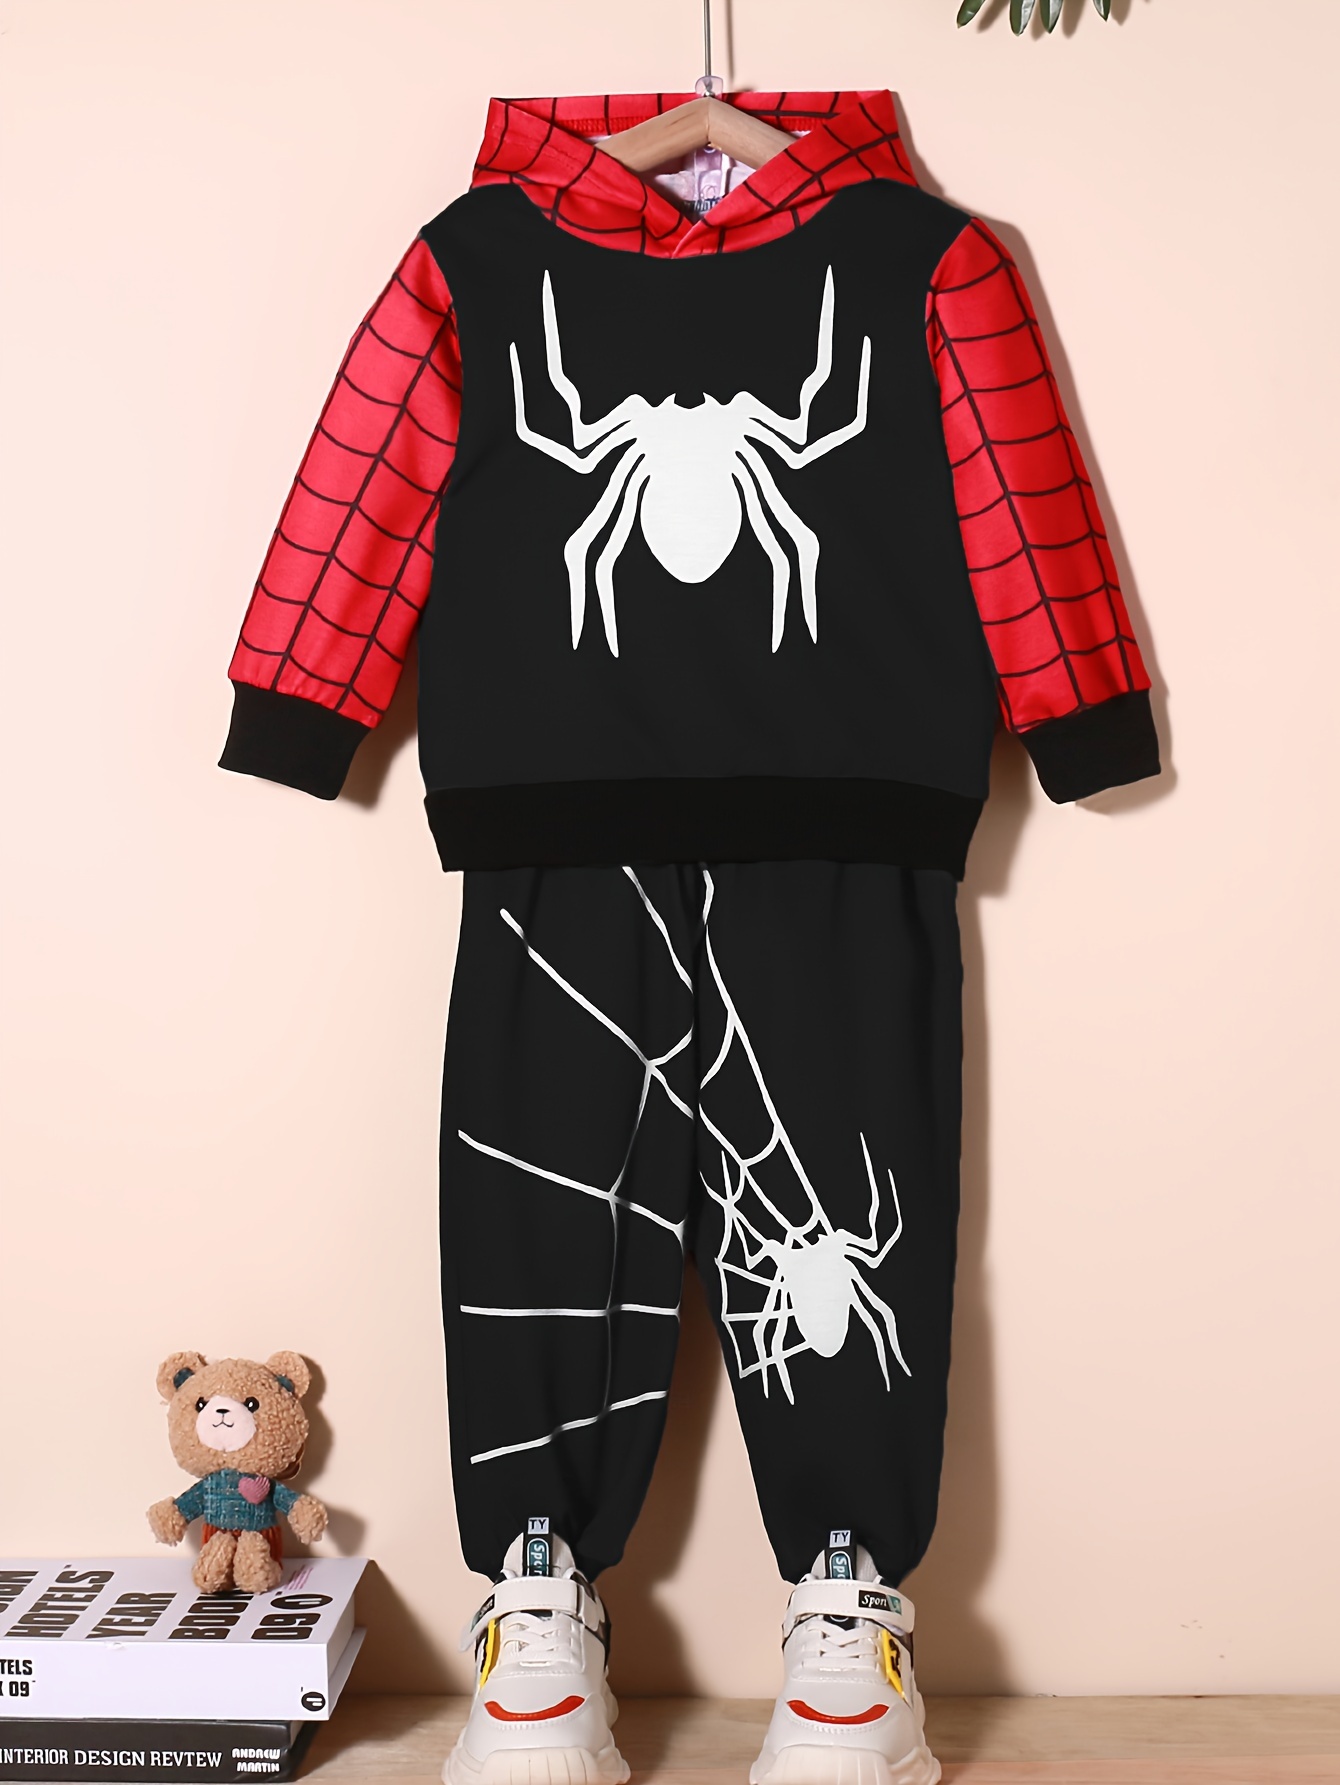 Lot de 2 Gant de Lanceur pour Spiderman, Super Spider Launcher, pour héros,  Jouet de Poignet de Lanceur d'araignée, pour Enfants Accessoires éducatifs  (A) : : Jeux et Jouets